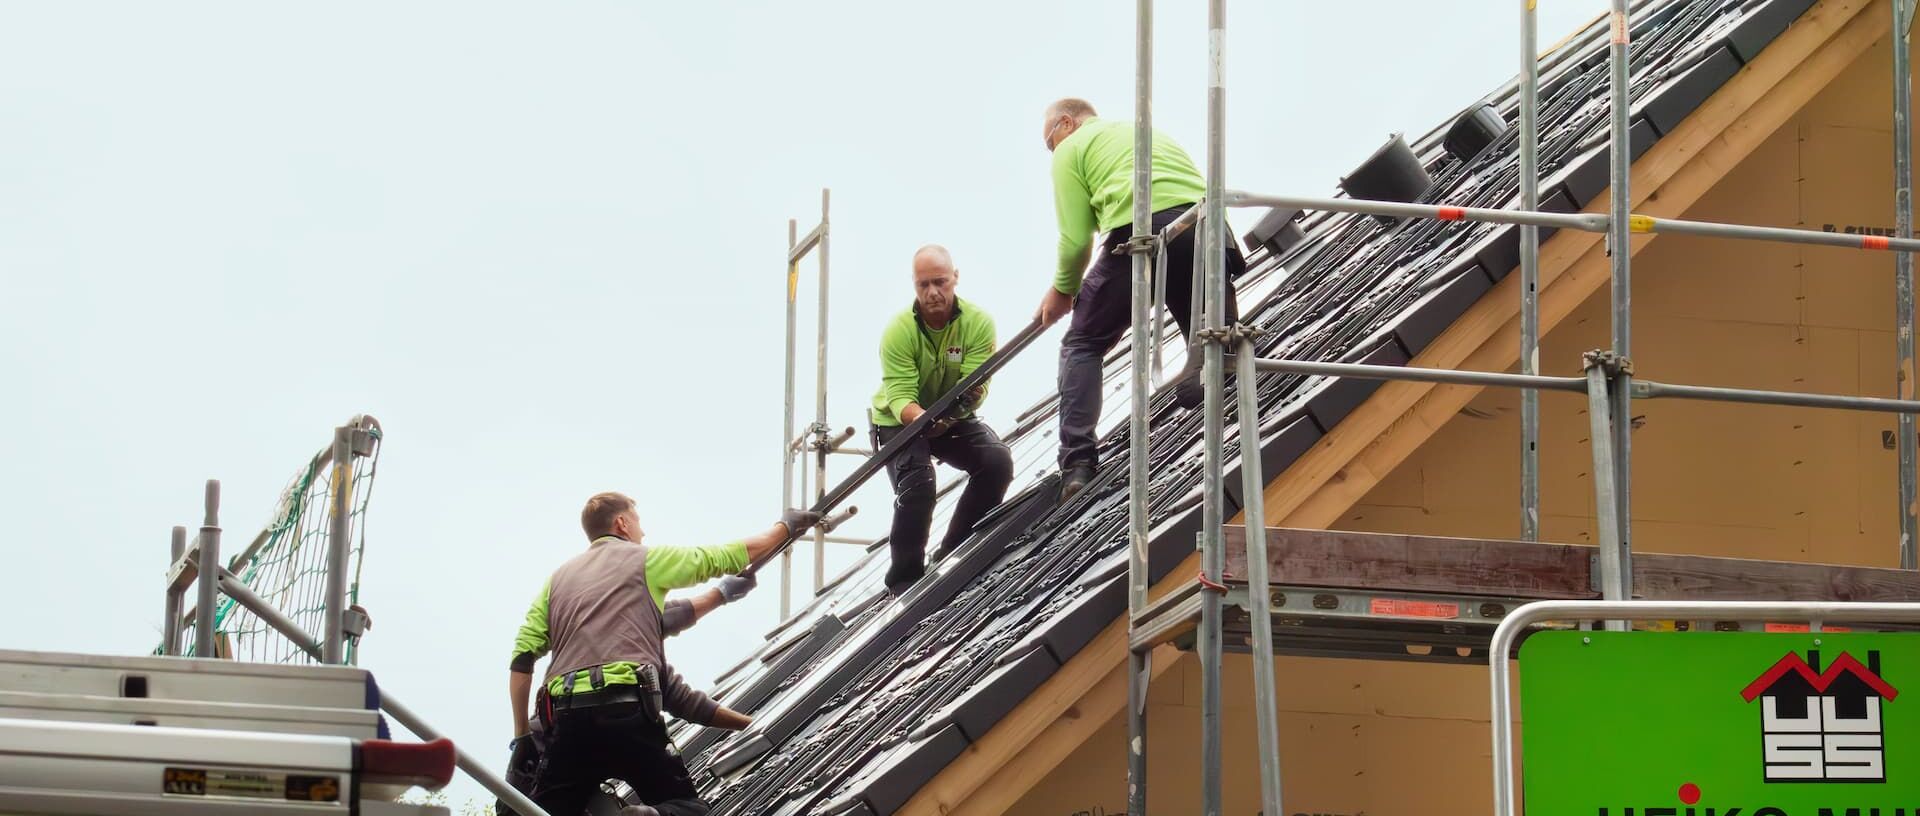 Mitarbeiter helfen sich gegenseitig, die Photovoltaik-Platten auf das Dach zu bekommen.